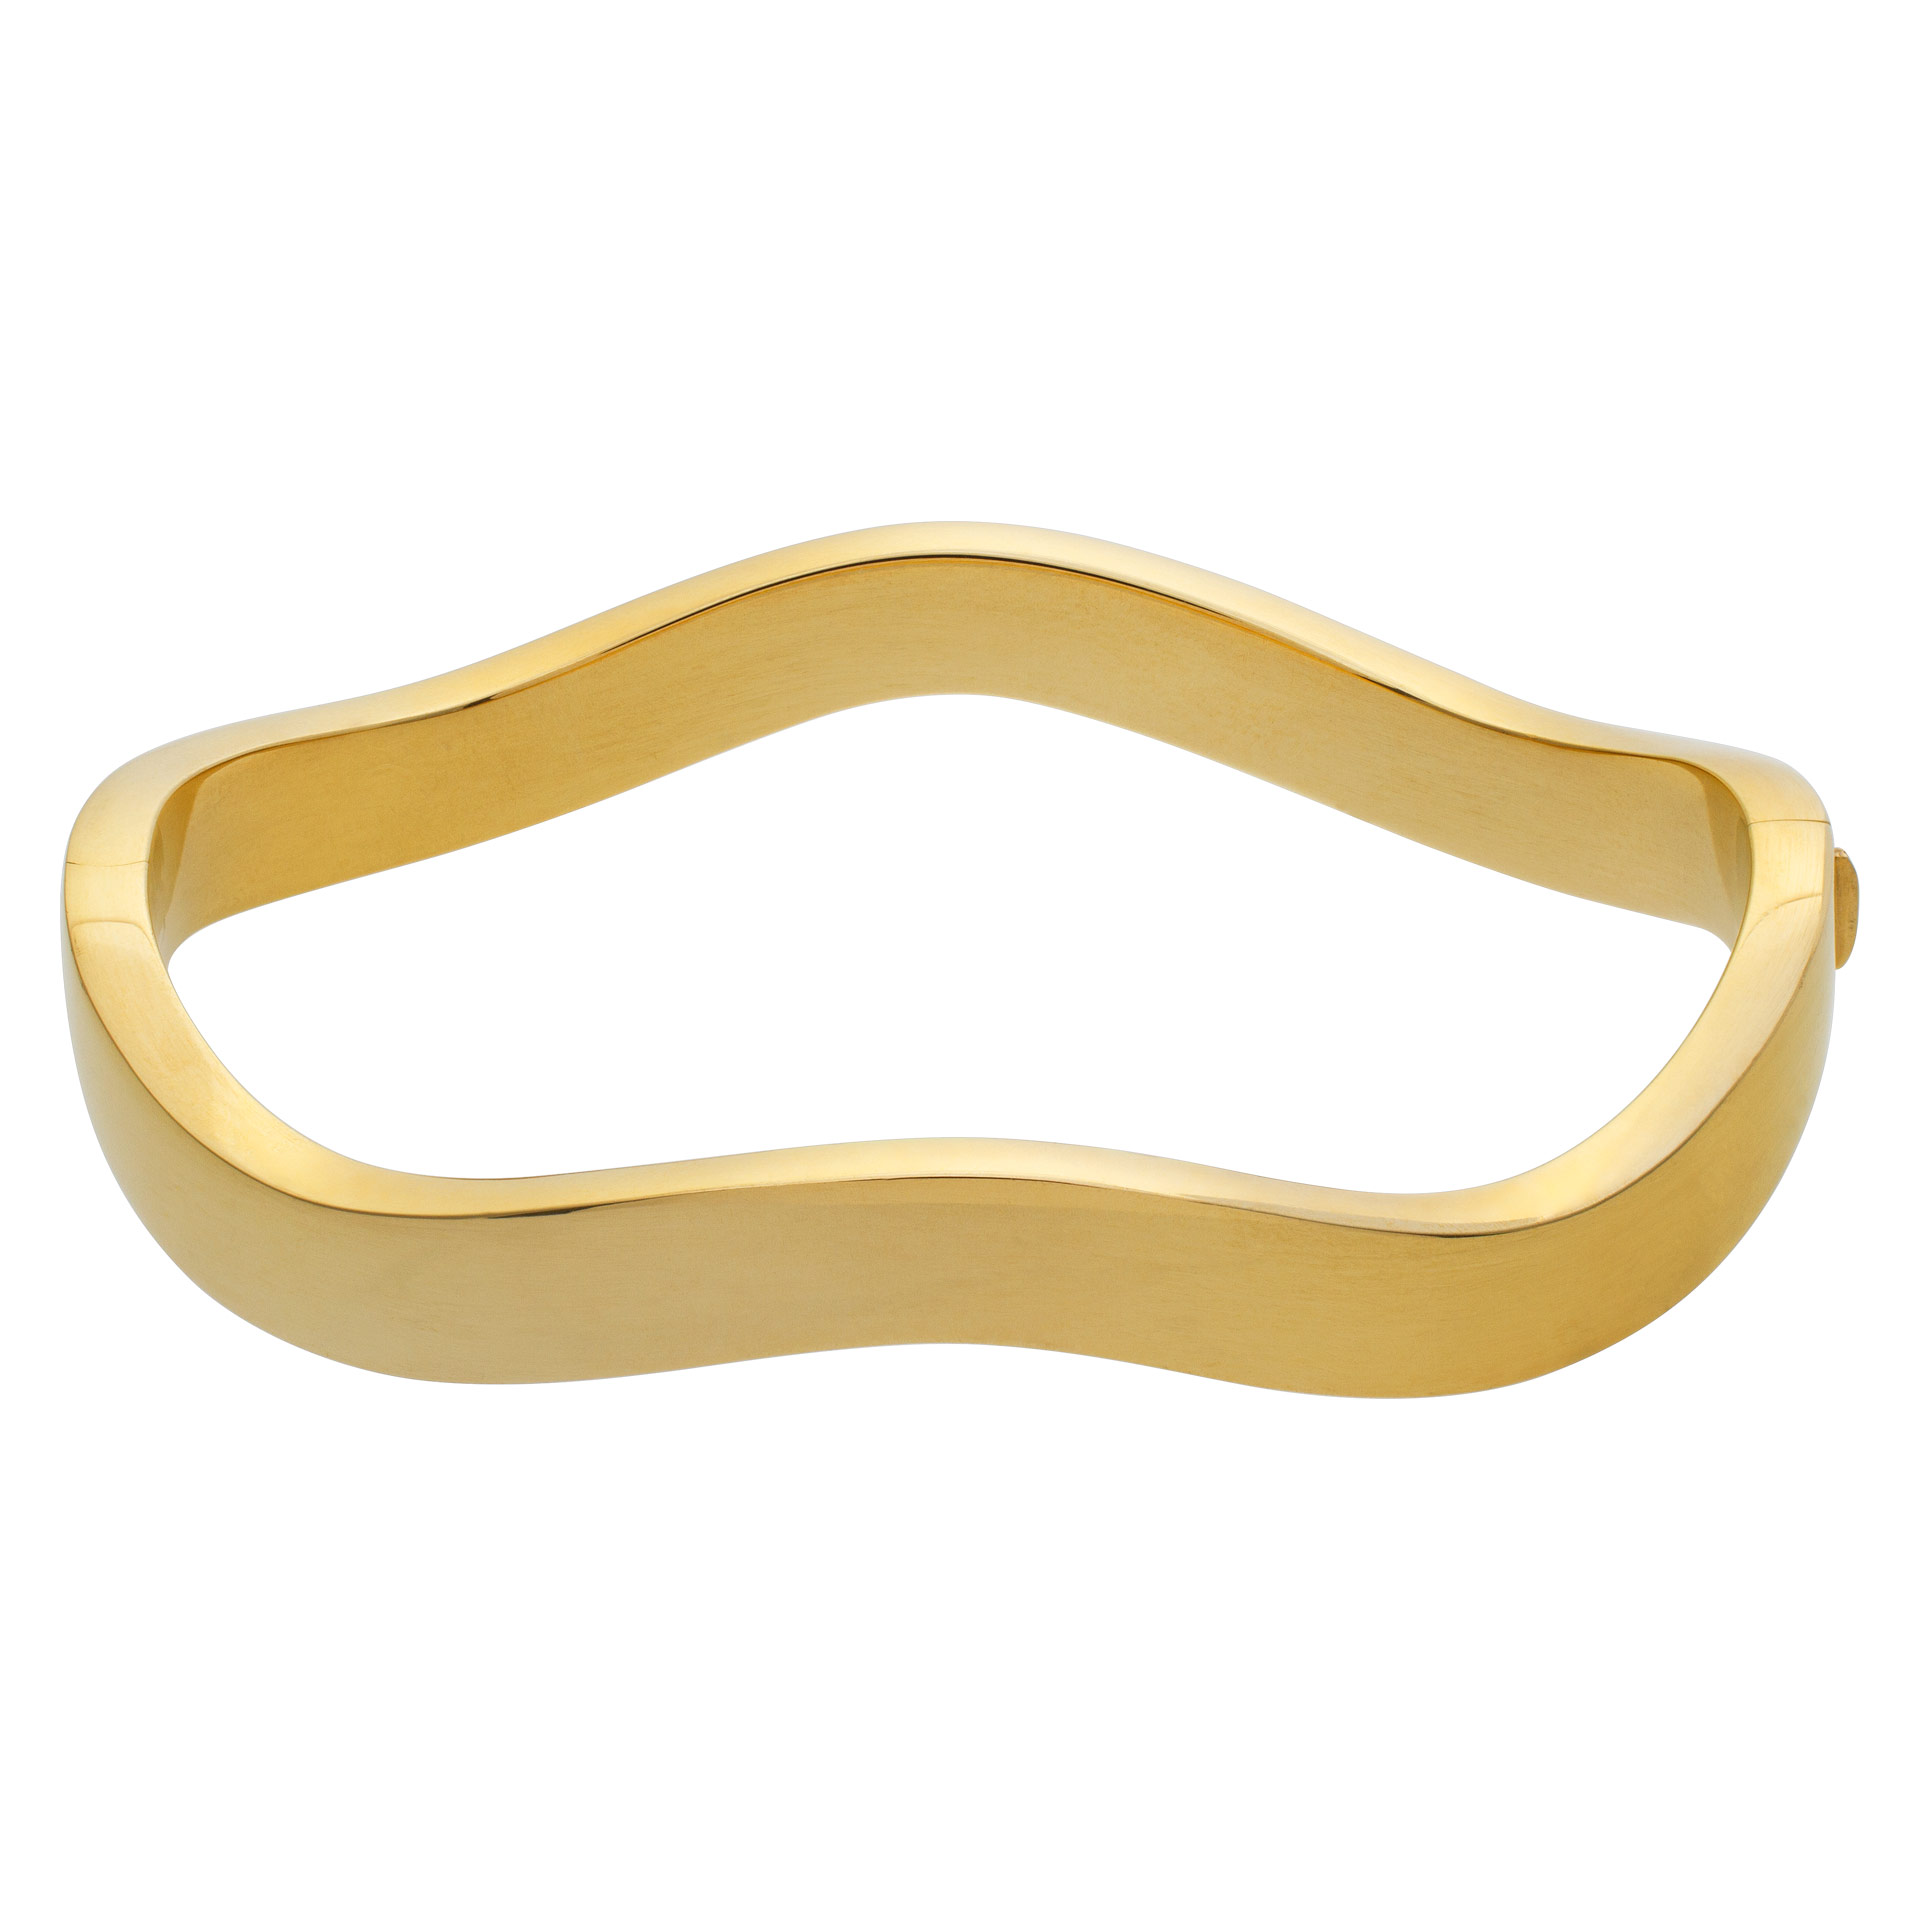 Tiffany & Co. wave bracelet in 18k yellow gold